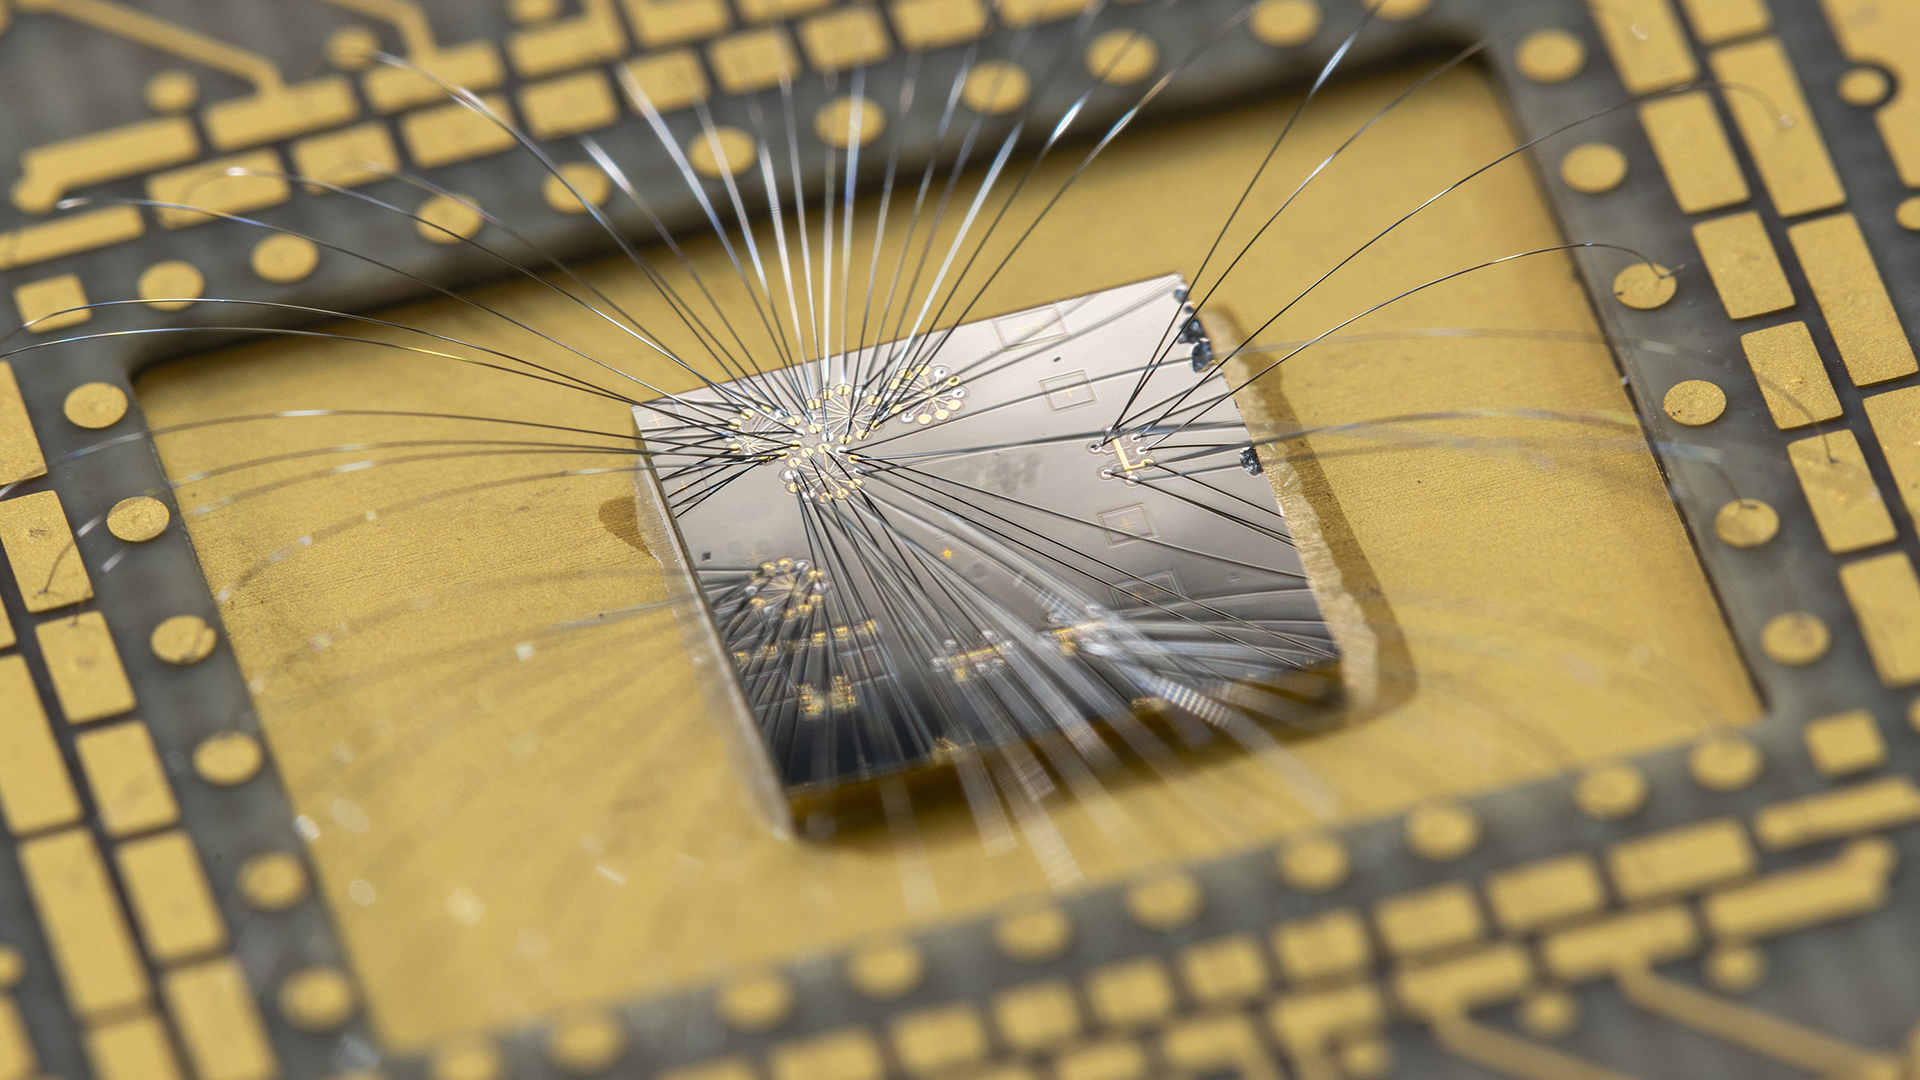 Microsoft's Azure quantum chip